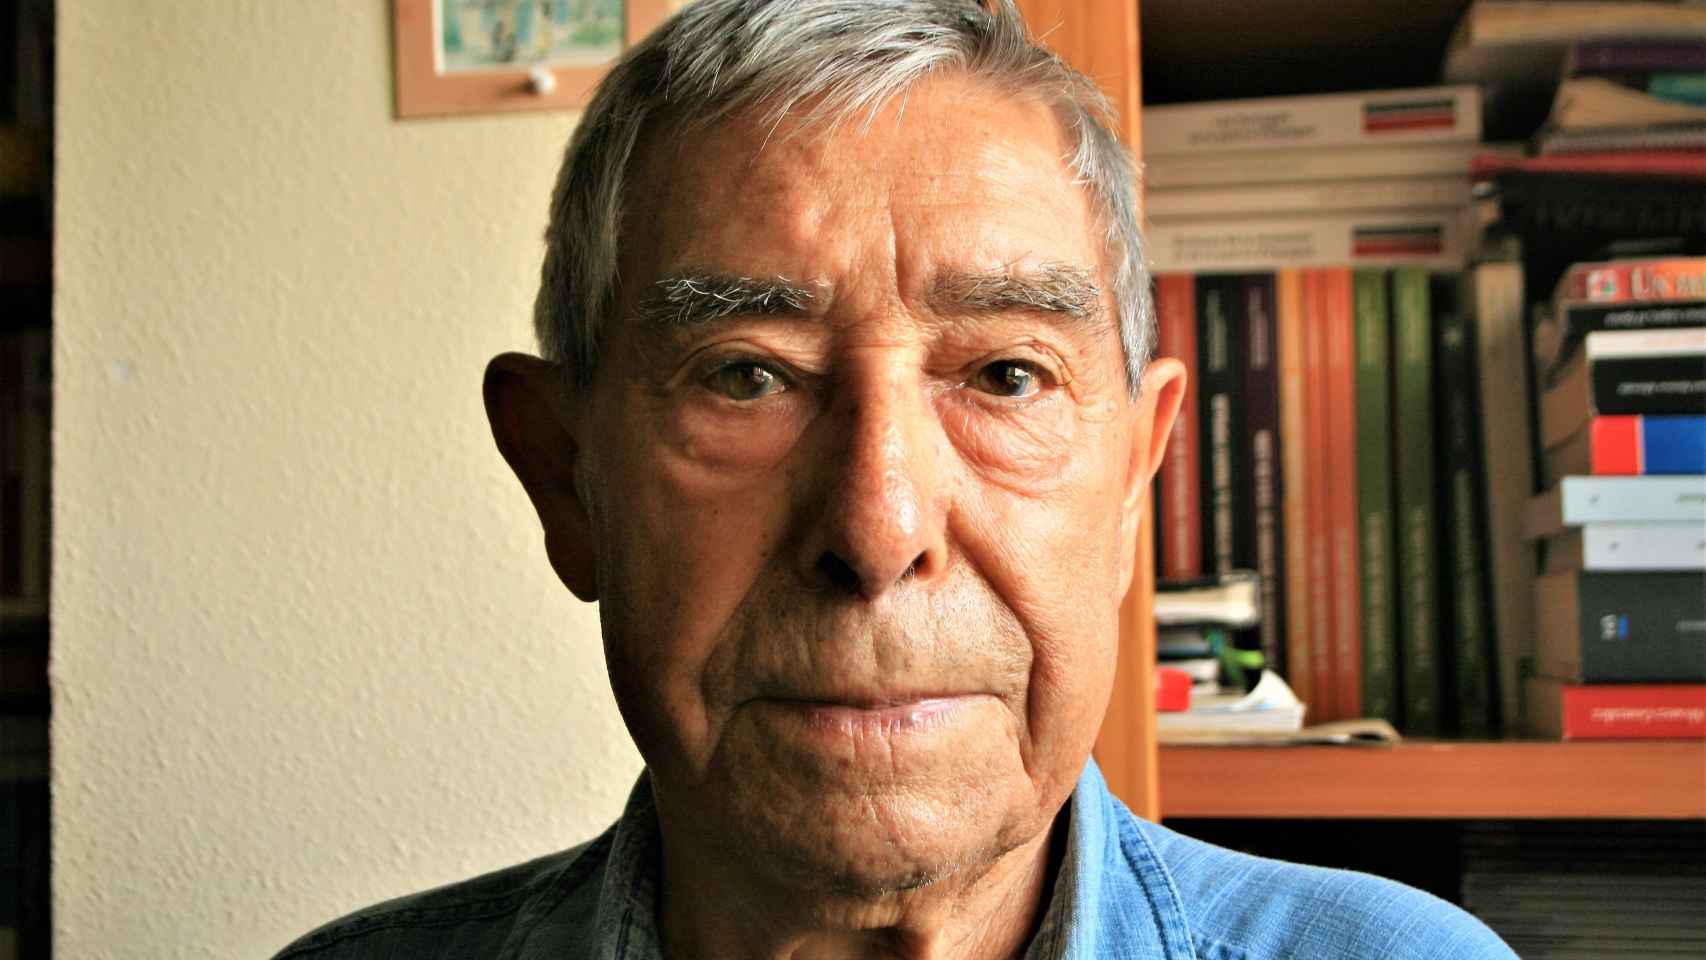 Francisco Martínez López, El Quico, en el salón del piso donde vive en El Campello (Alicante).